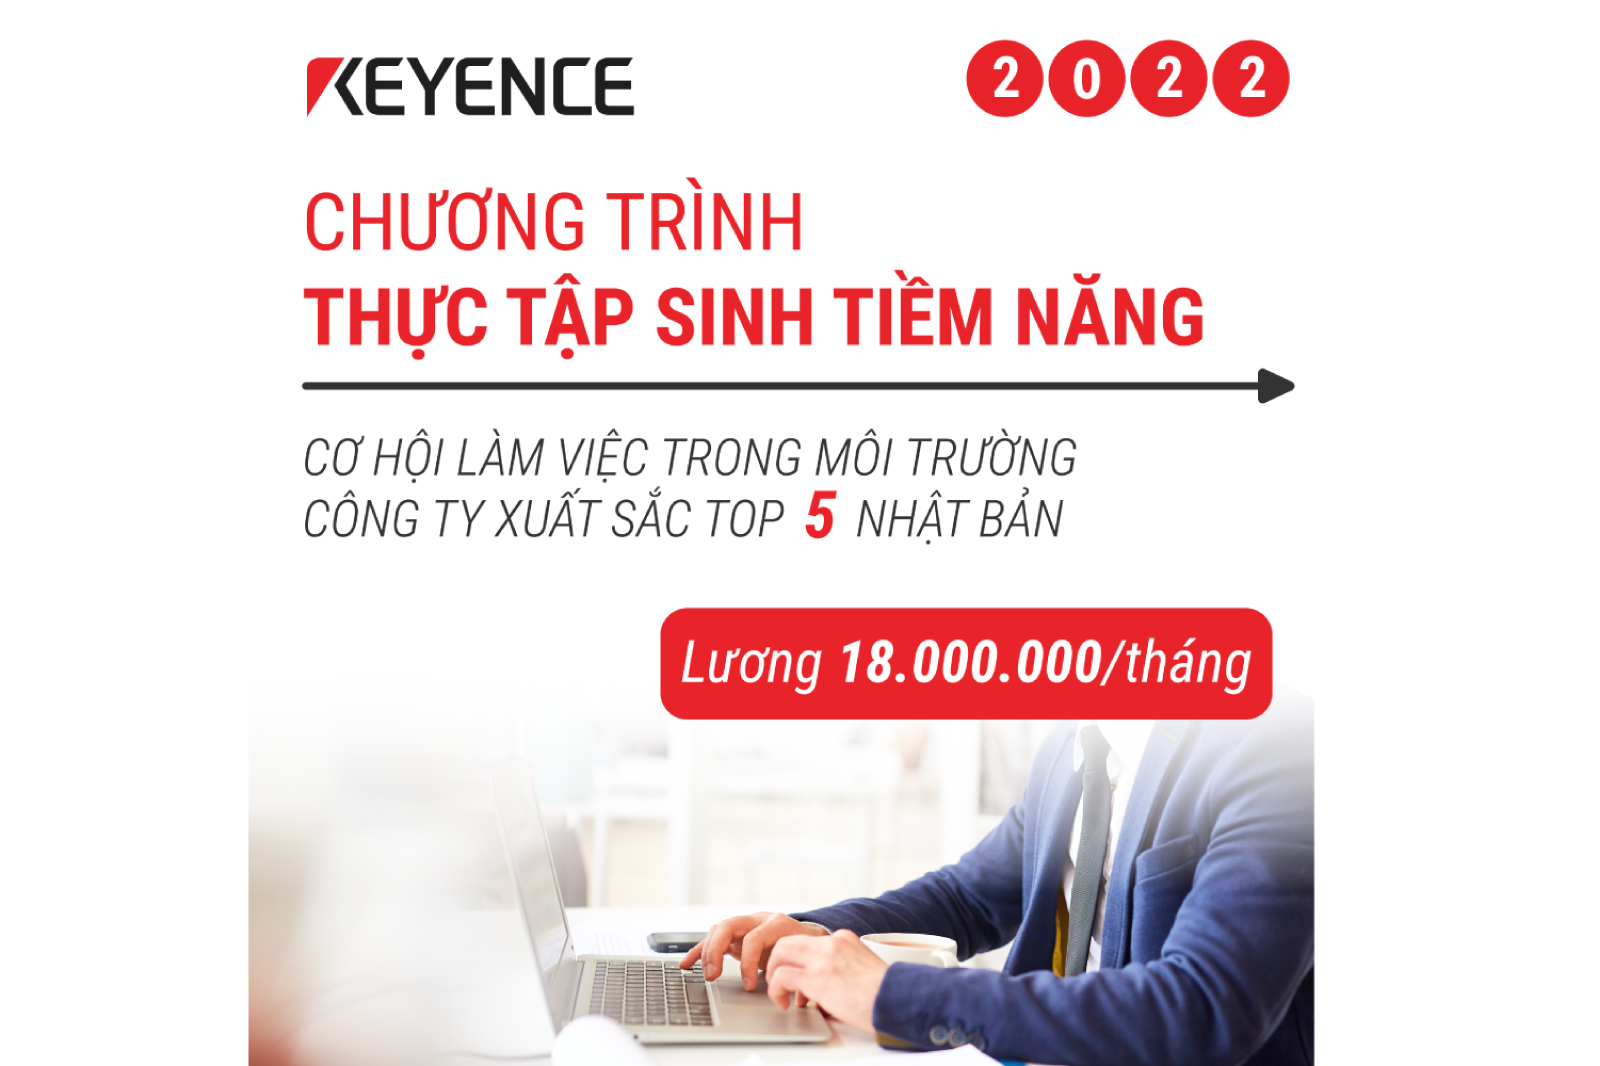 Chương trình "Thực tập sinh tiềm năng" tại Công ty KEYENCE Việt Nam cho vị trí Sales Engineers 